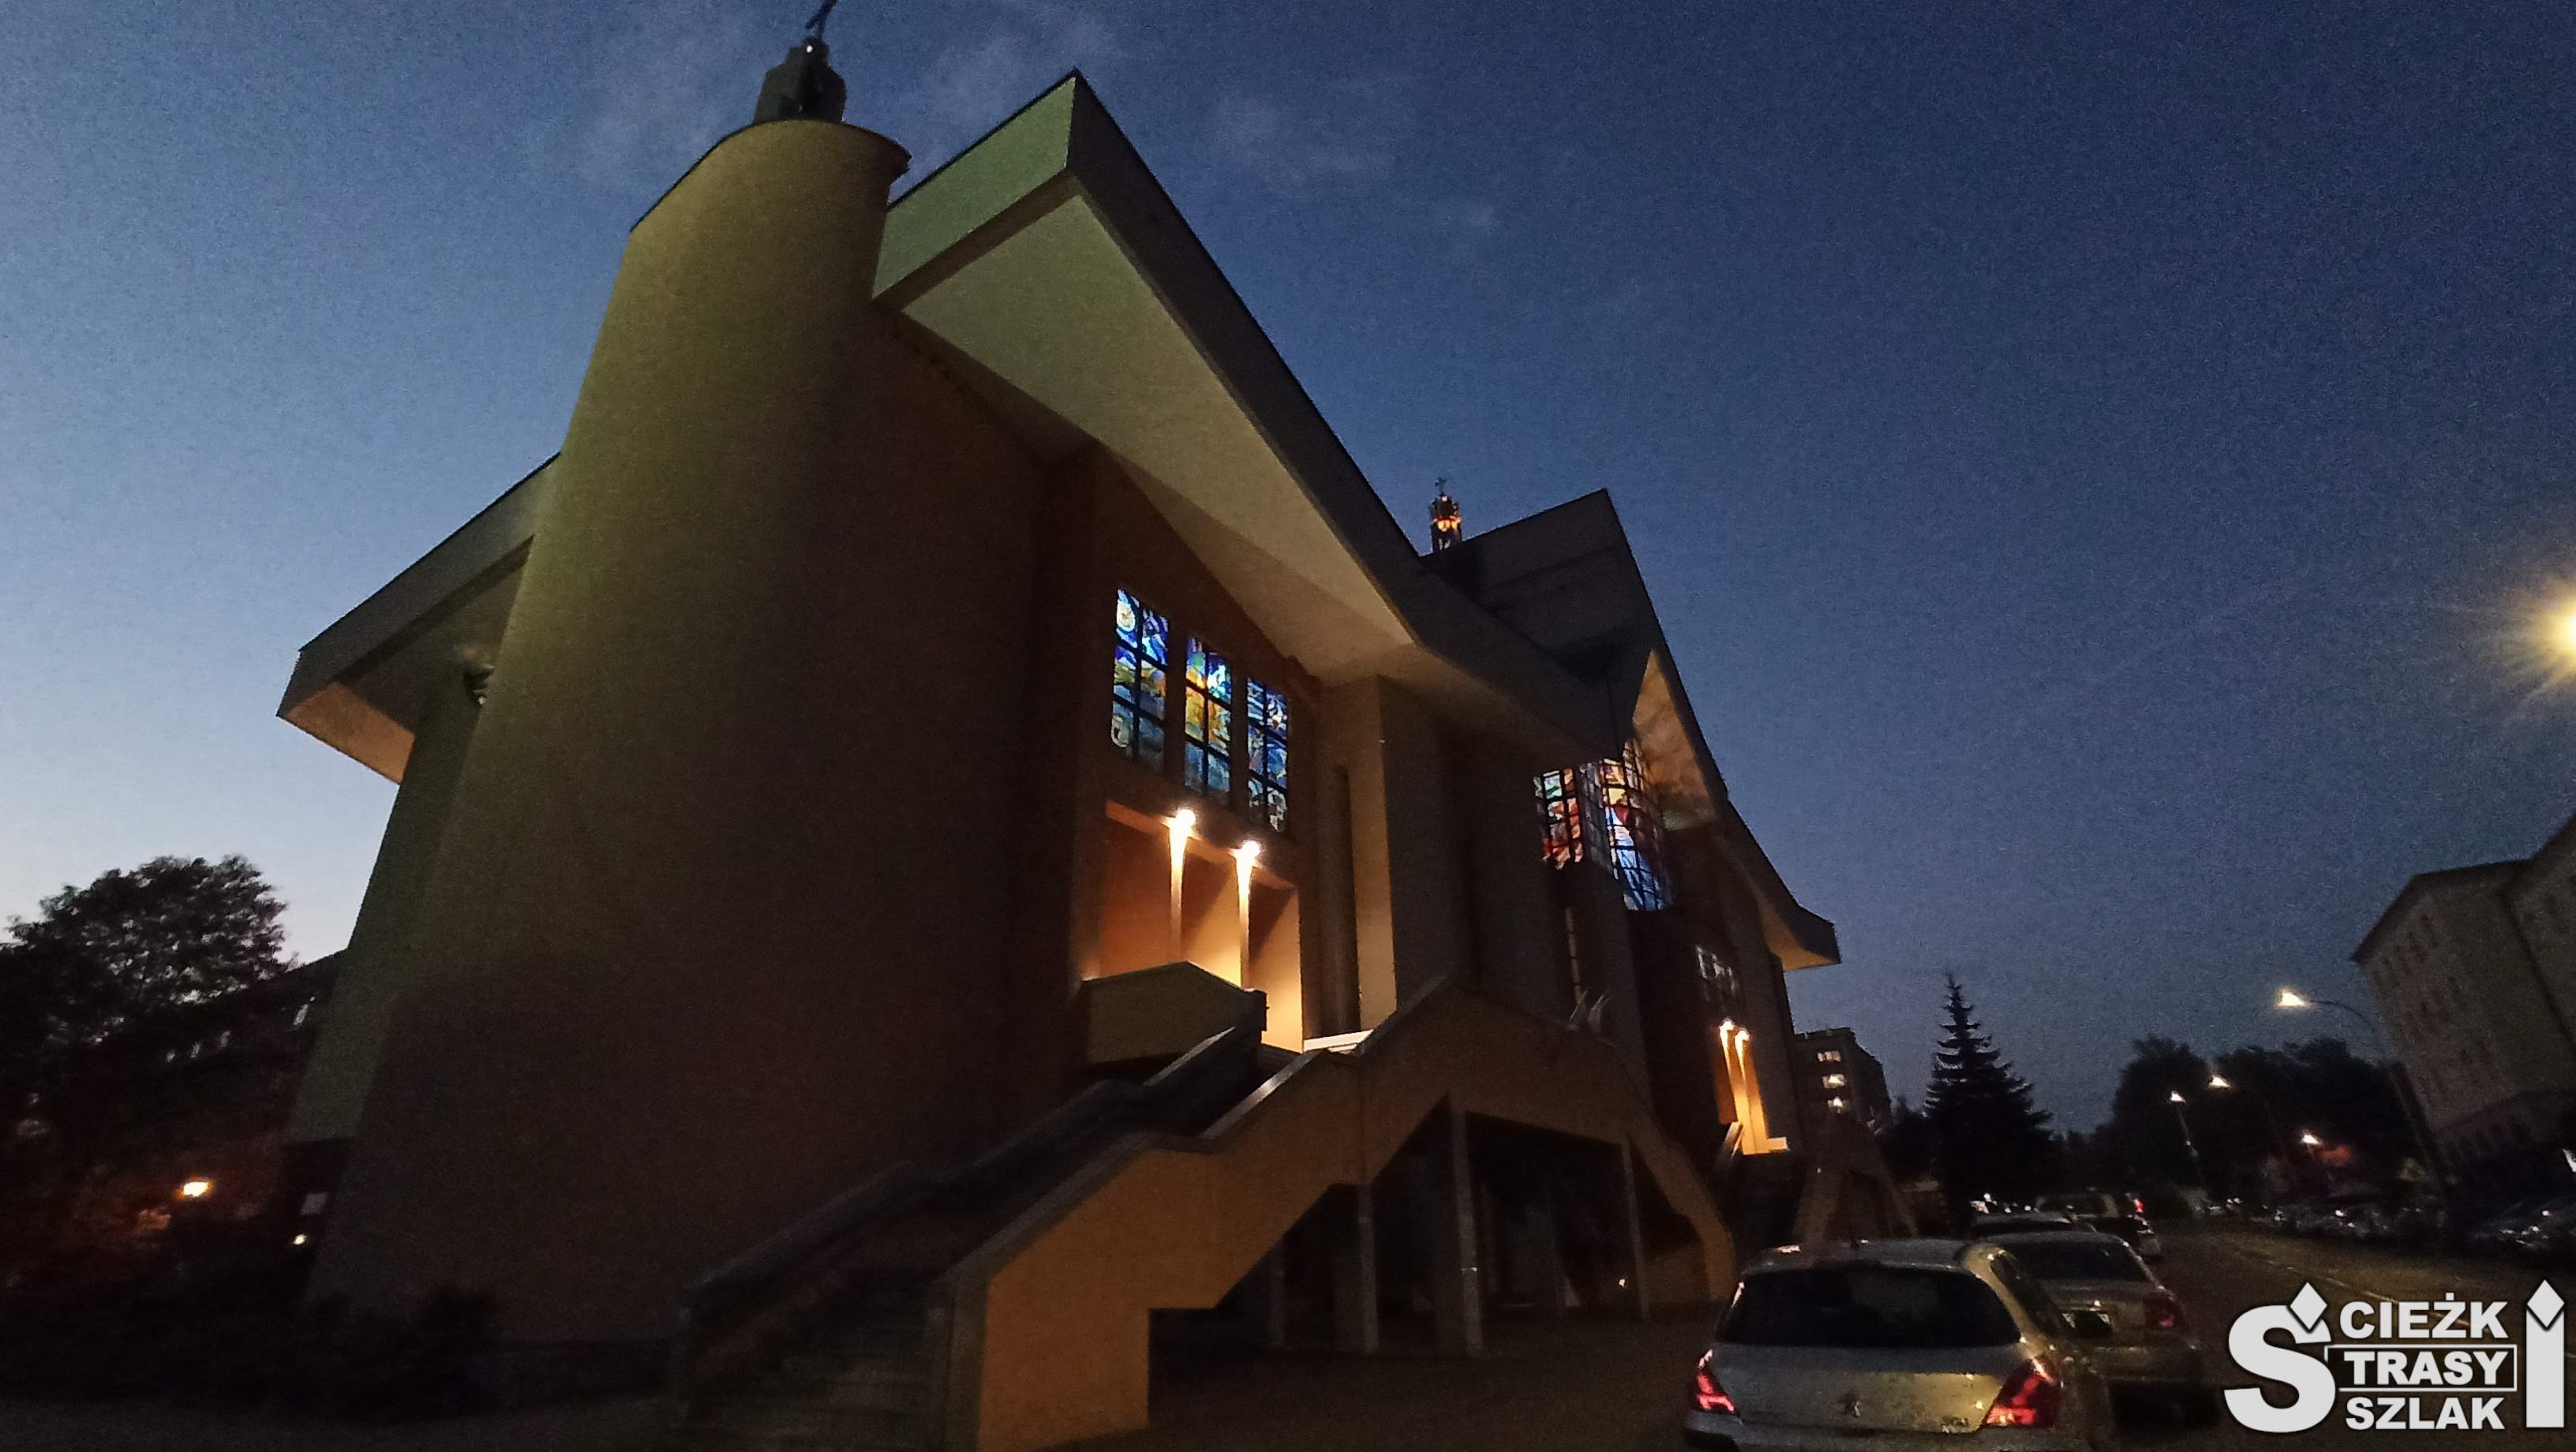 Nowoczesna świątynia pańska z fotowoltaiką na dachu kościoła i schodami do wnętrza Sanktuarium w Jaworznie wieczorową porą